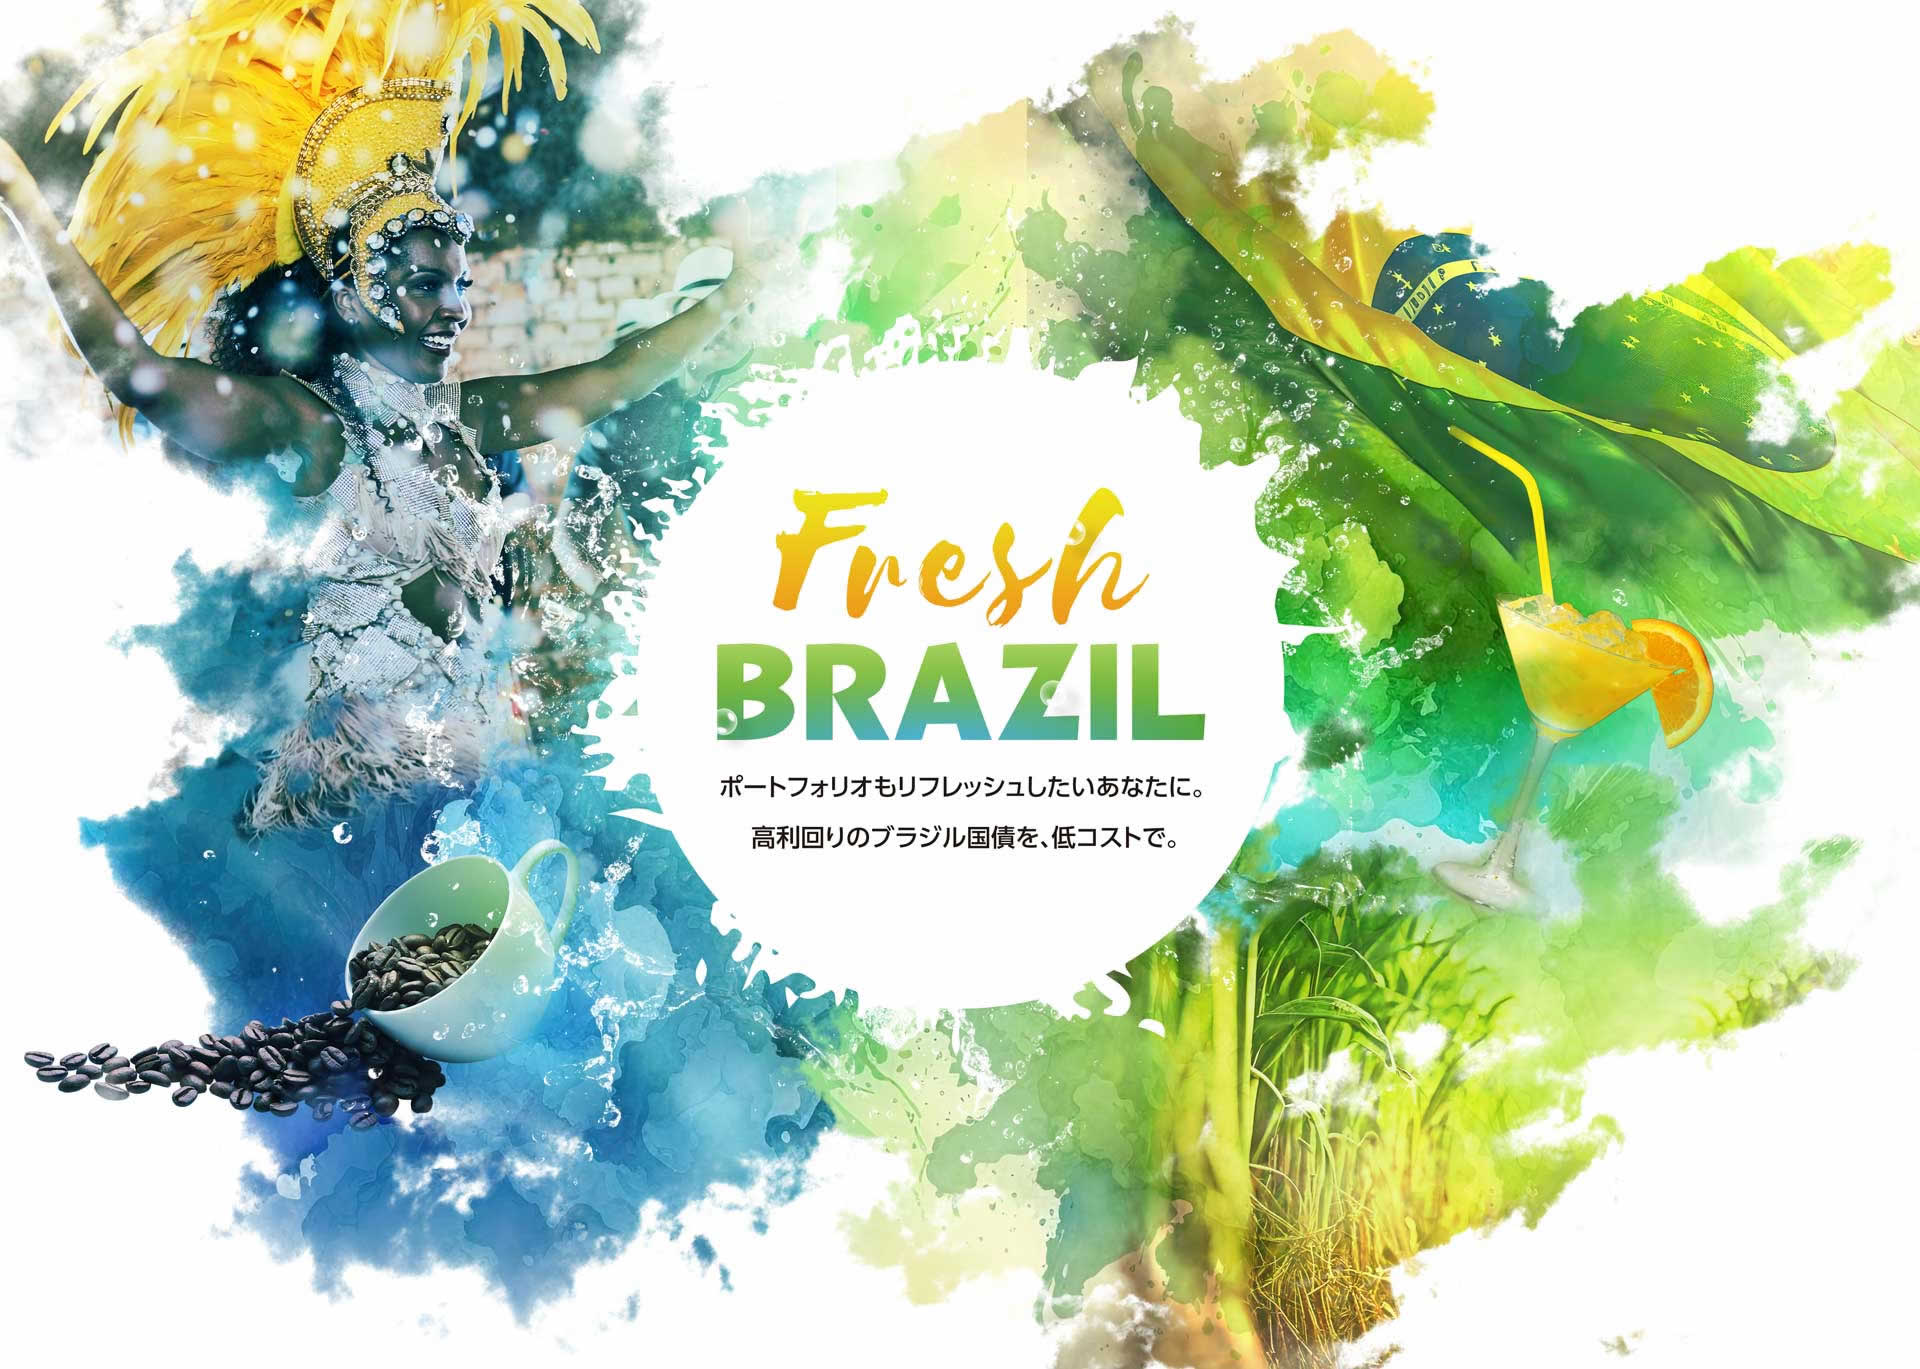 Fresh BRAZIL ポートフォリオもリフレッシュしたいあなたに。高利回りのブラジル国債を、低コストで。